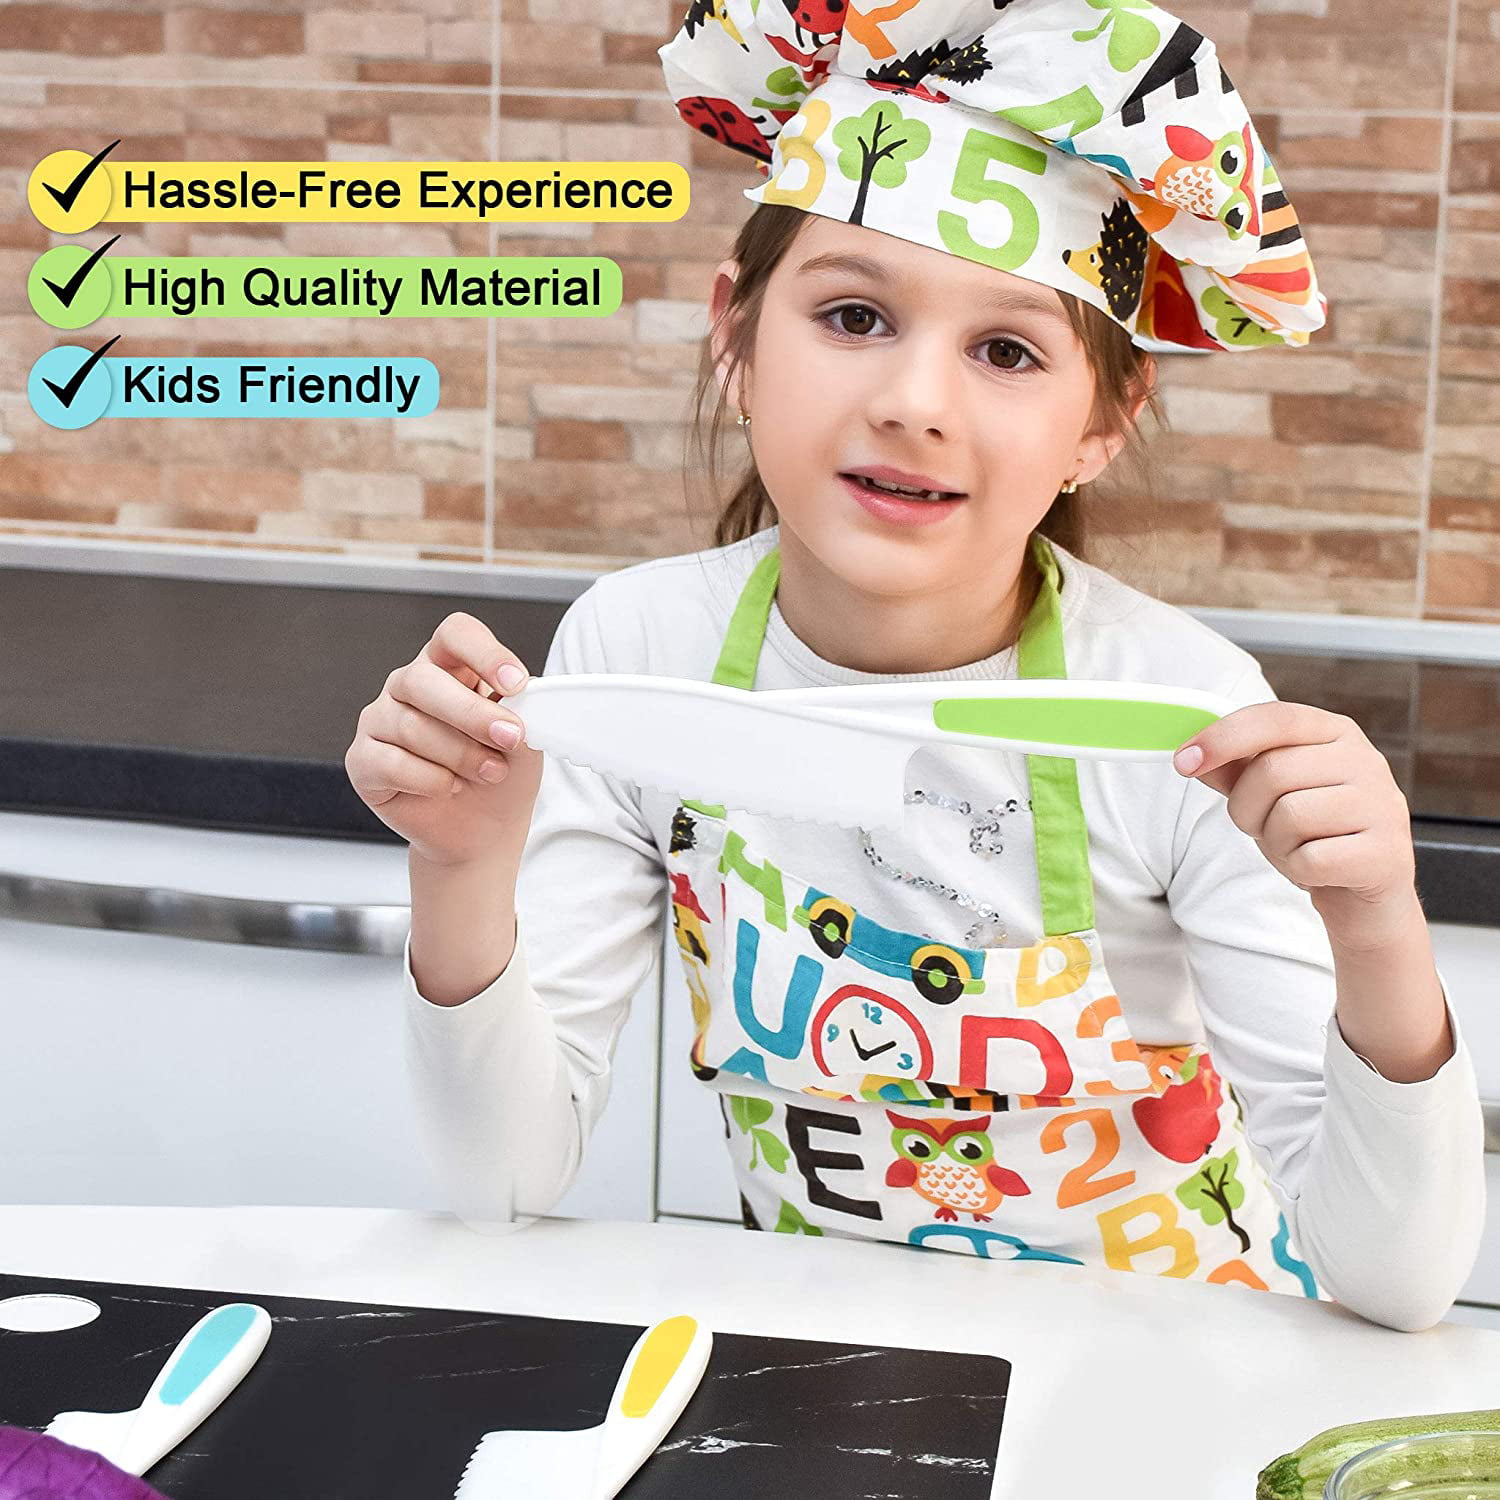 Nogis 3Pcs Kids Plastic Knife Set,BPA-Free Children's Safe Cooking Knife  Set (Ages 4-12)&Cutting Board for Fruit,Salad